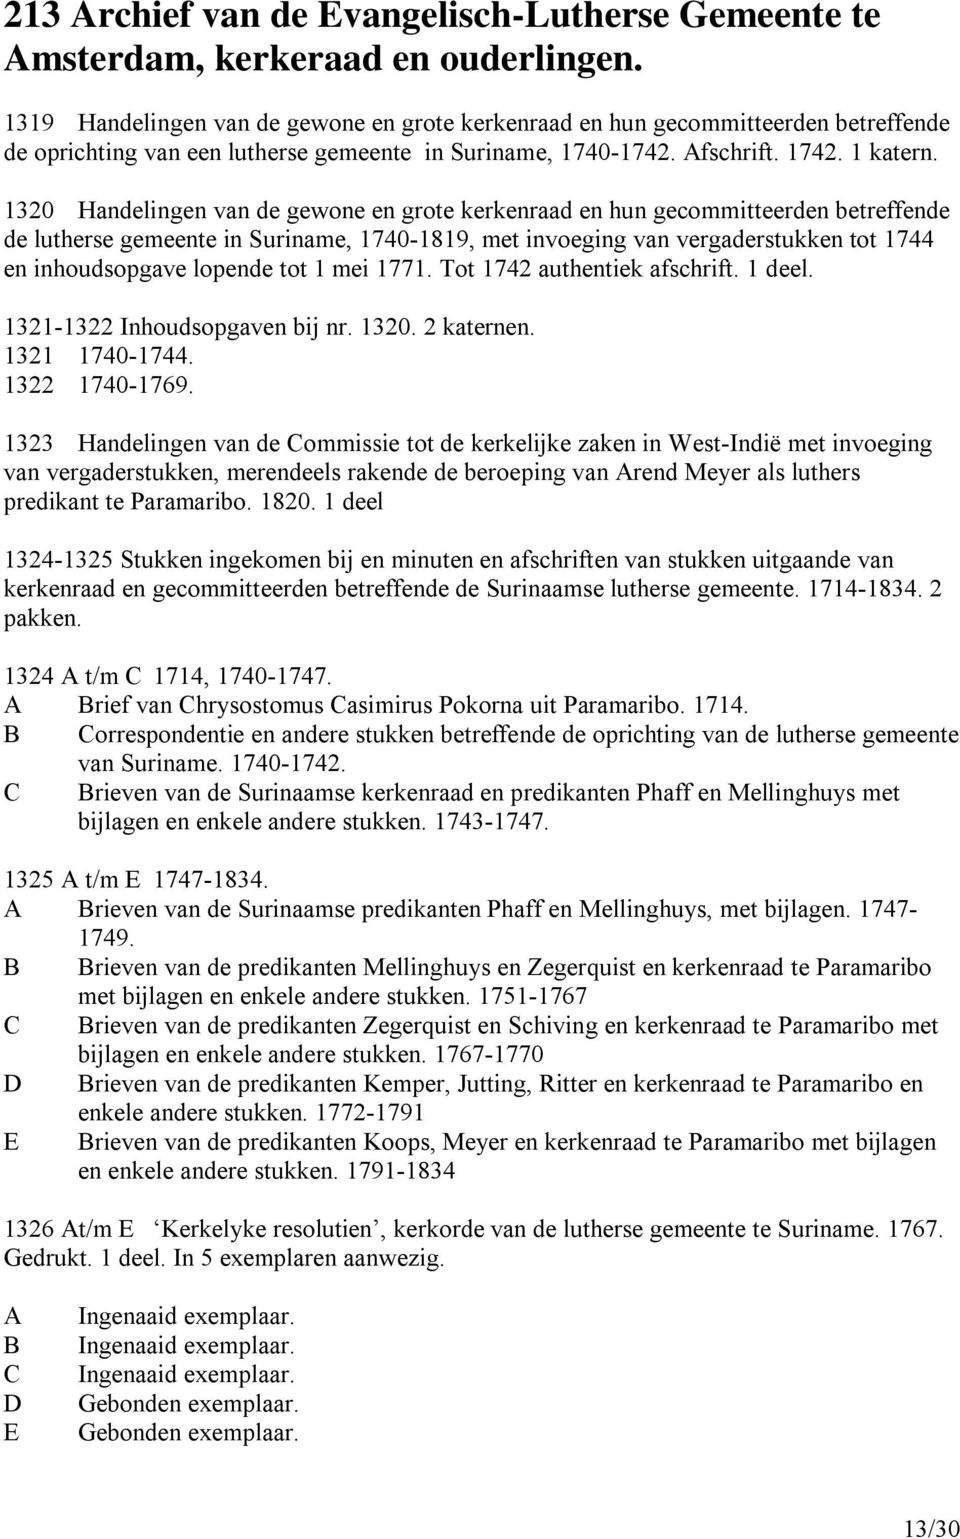 1320 Handelingen van de gewone en grote kerkenraad en hun gecommitteerden betreffende de lutherse gemeente in Suriname, 1740-1819, met invoeging van vergaderstukken tot 1744 en inhoudsopgave lopende